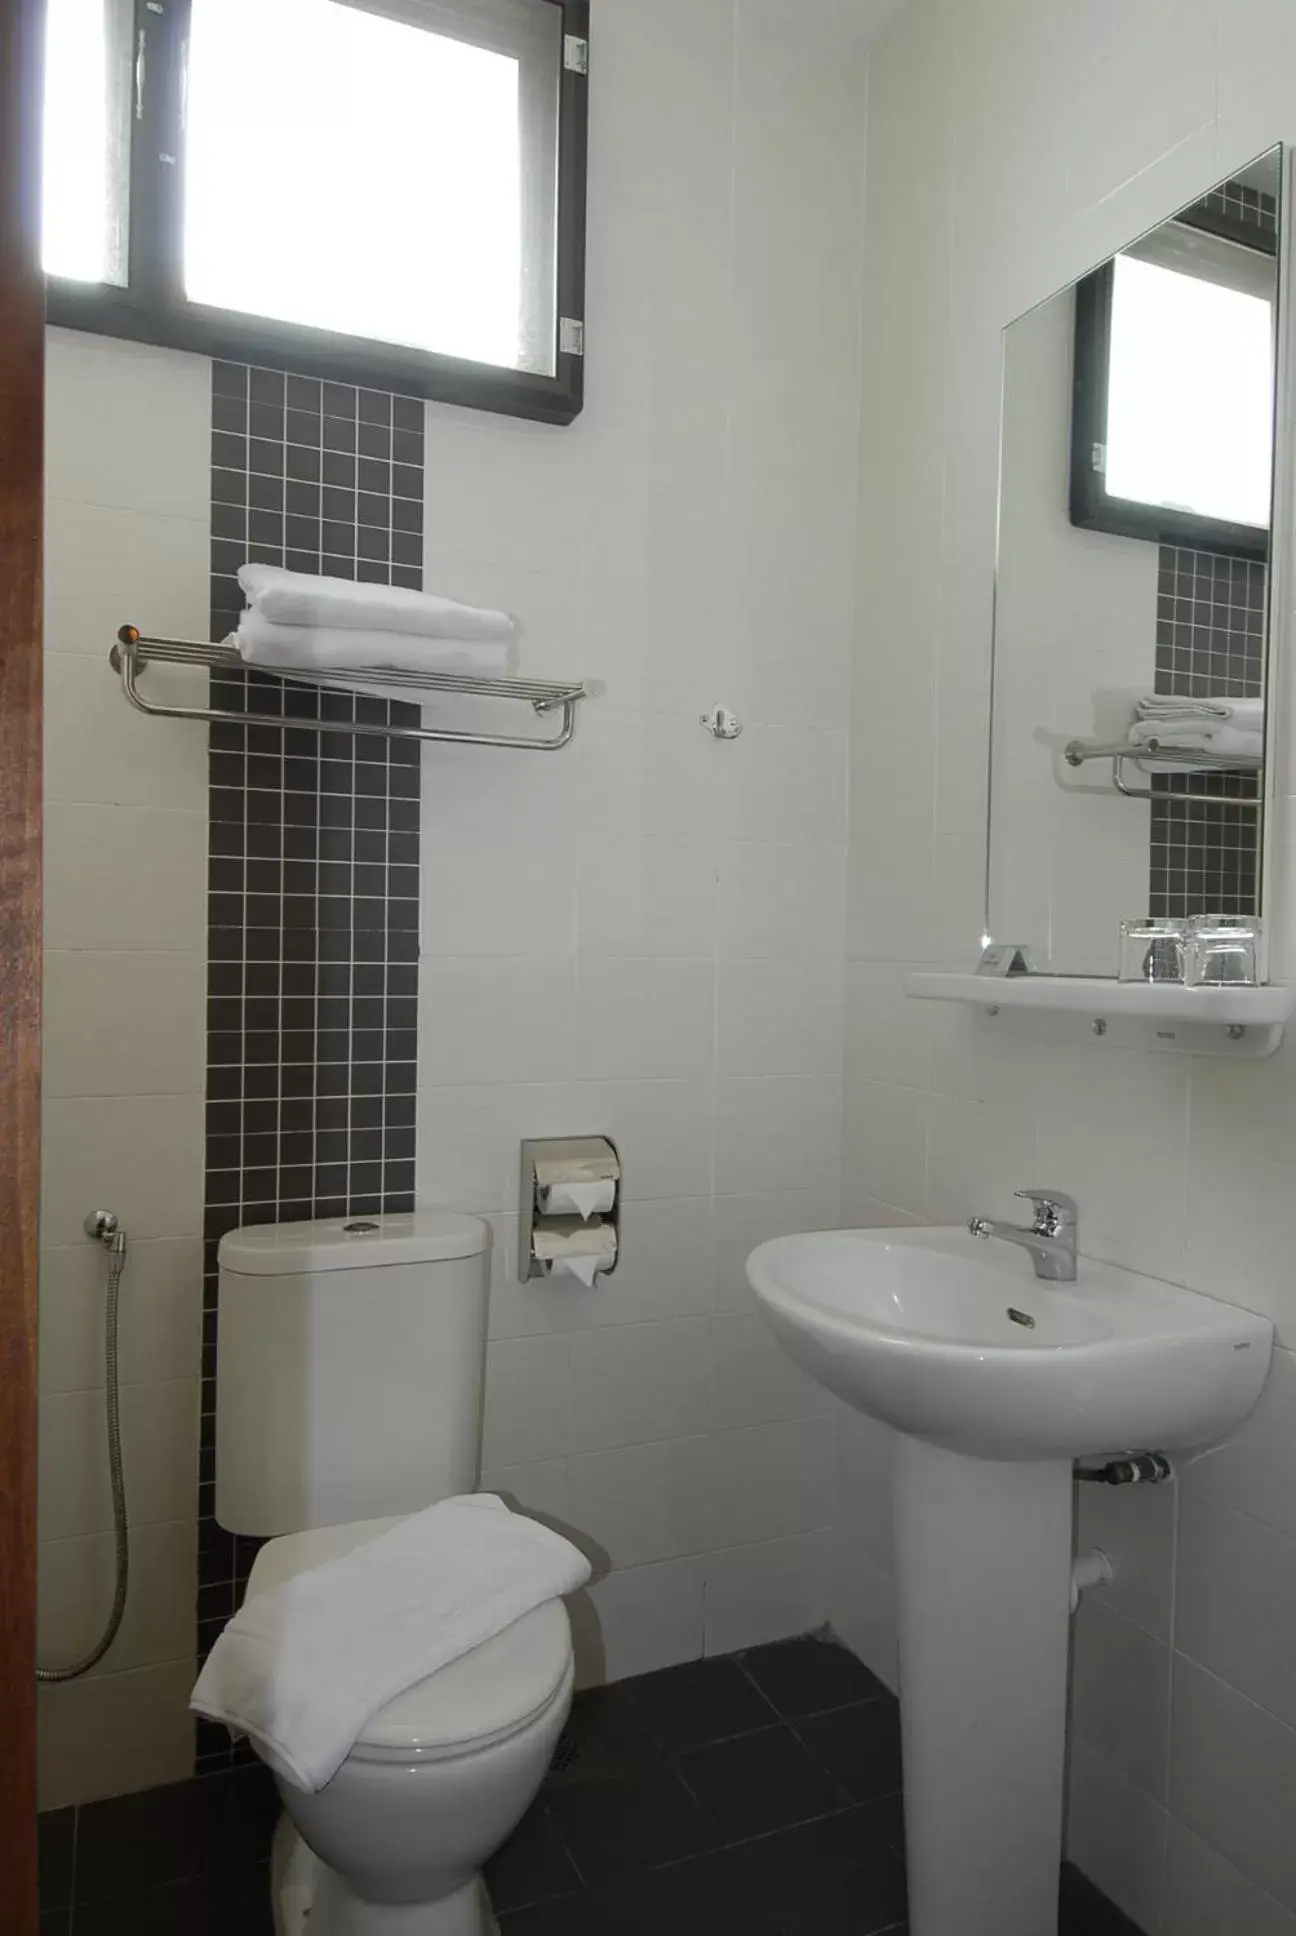 Bathroom in Victoria Inn, Penang